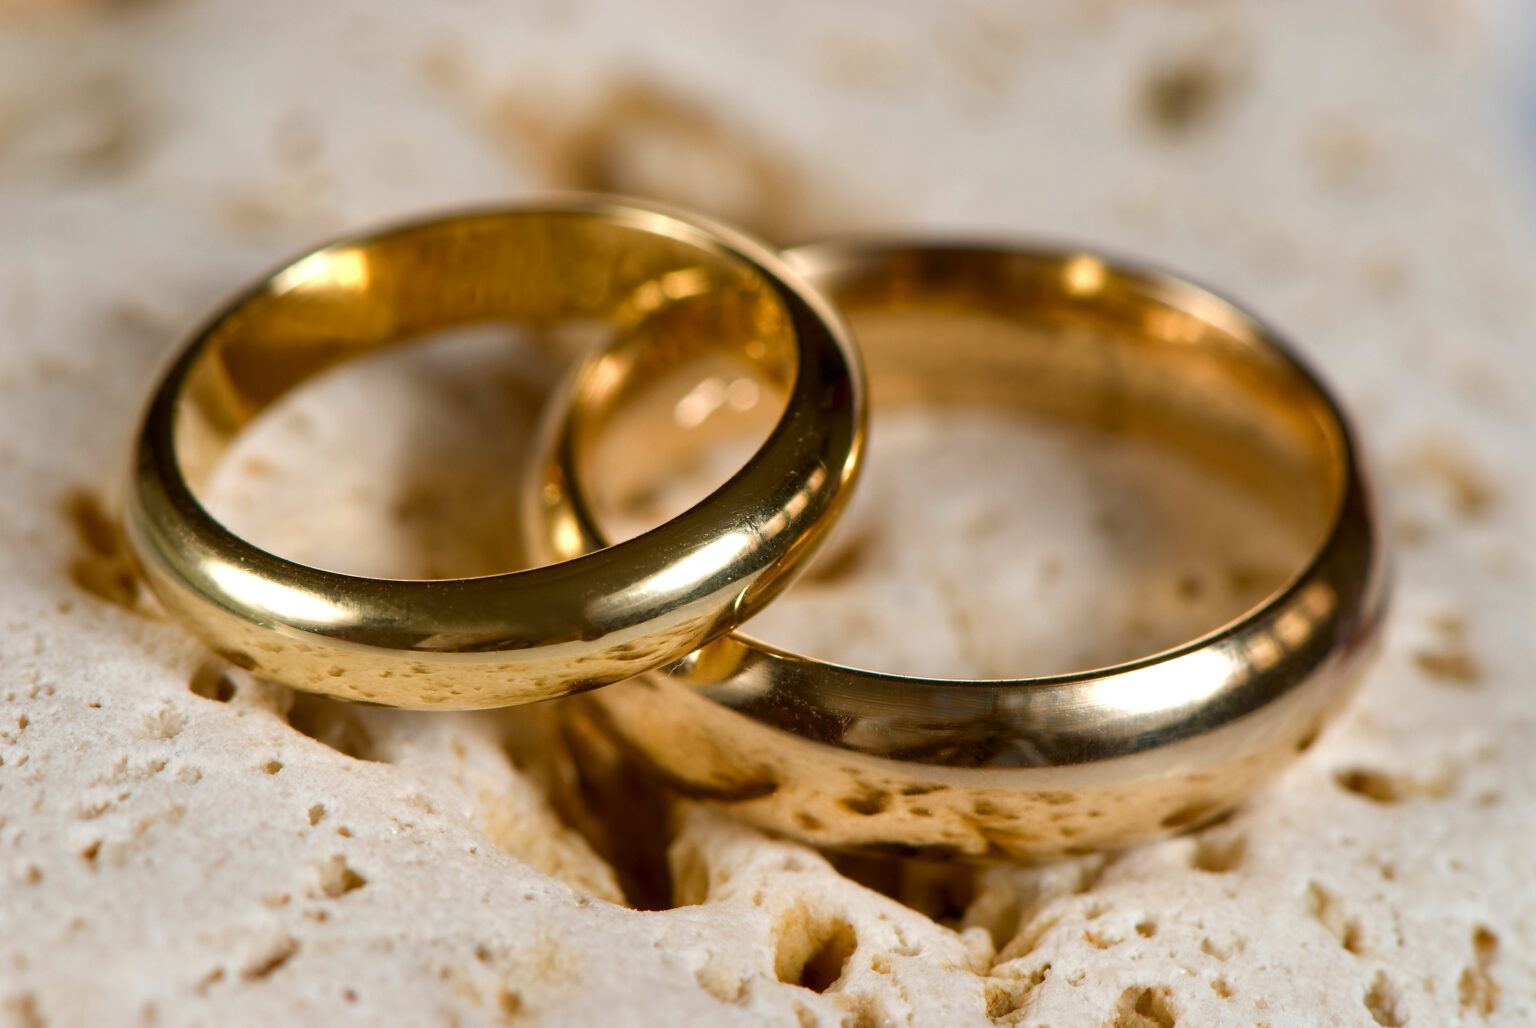 Життя в шлюбі складається з 7 етапів. Якби сучасна людина знала – розлучень не було б…